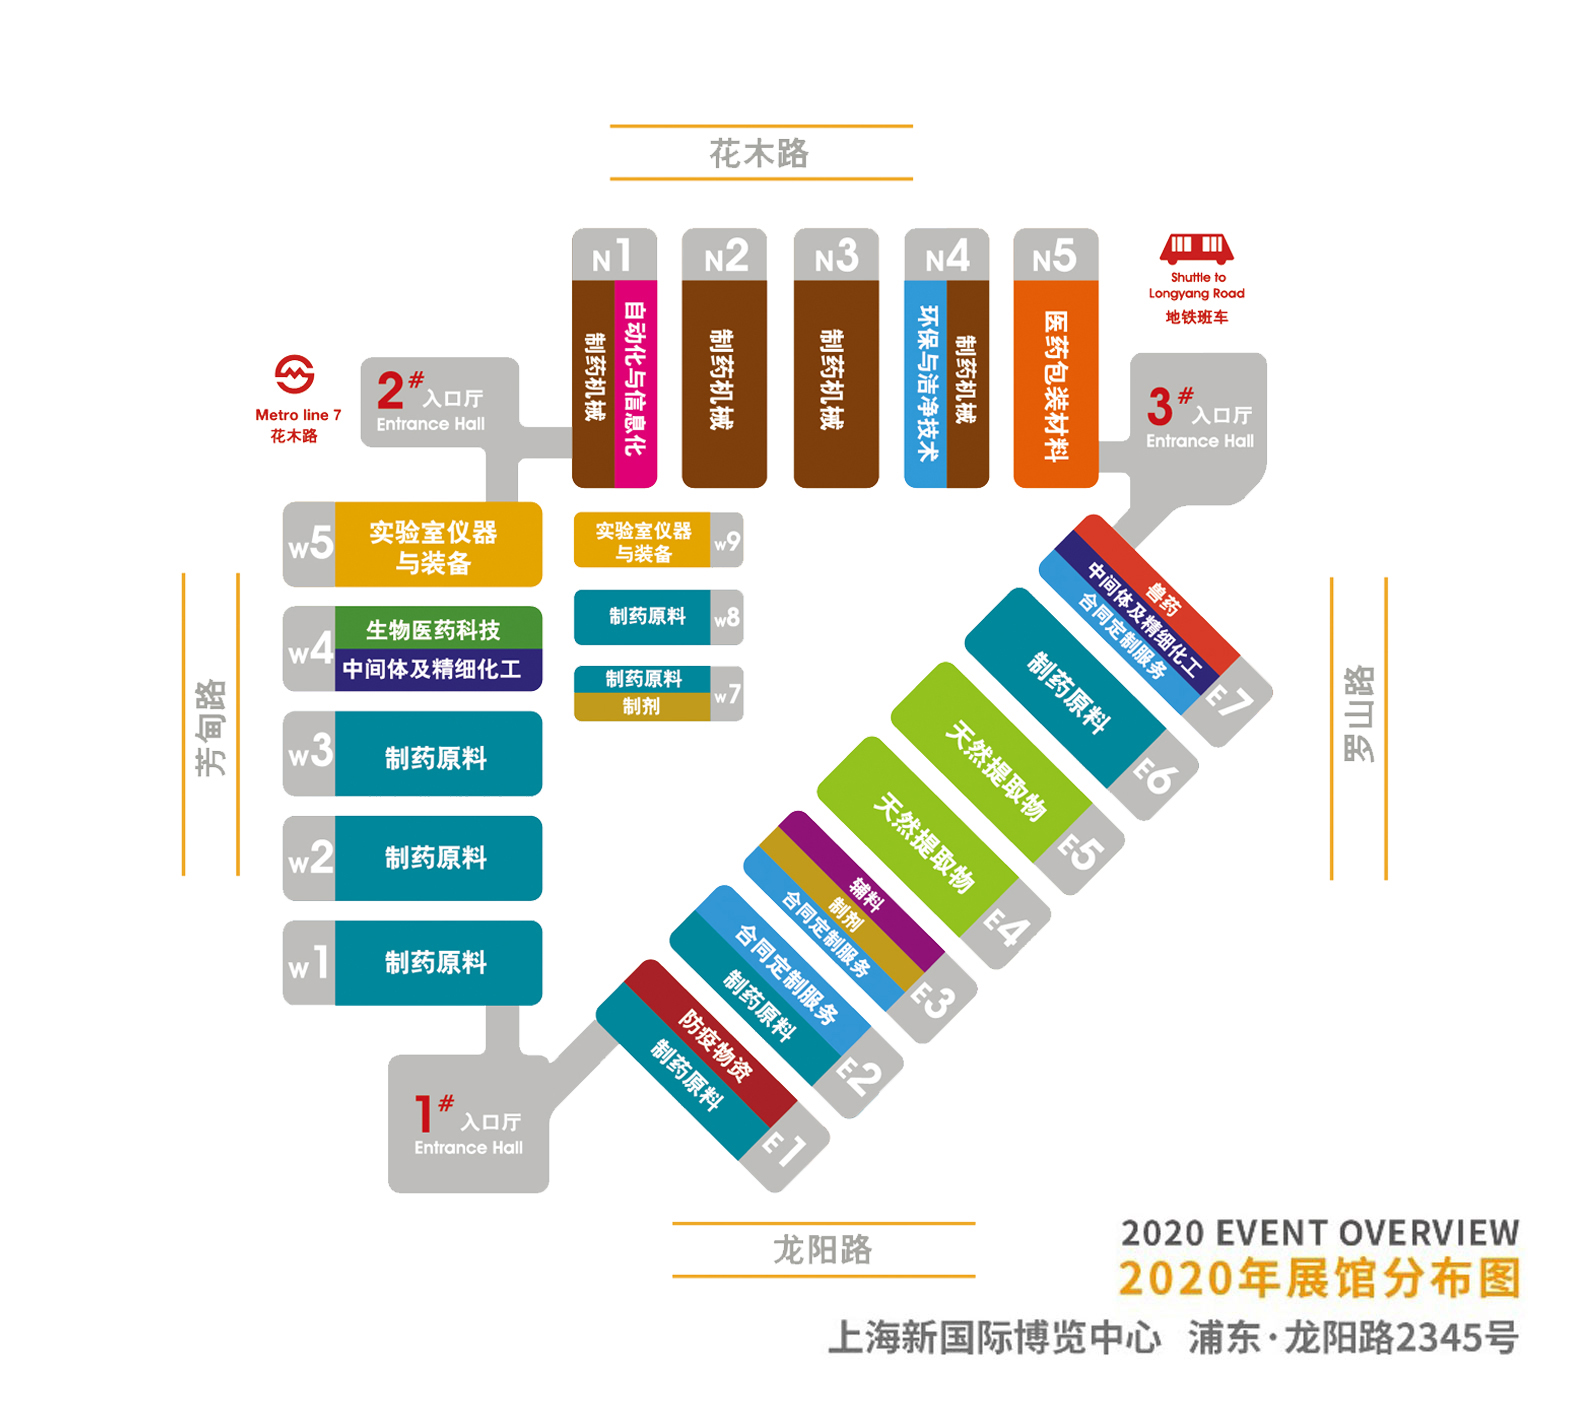 标际GBPI邀您莅临上海Innopack 2020医药包装展